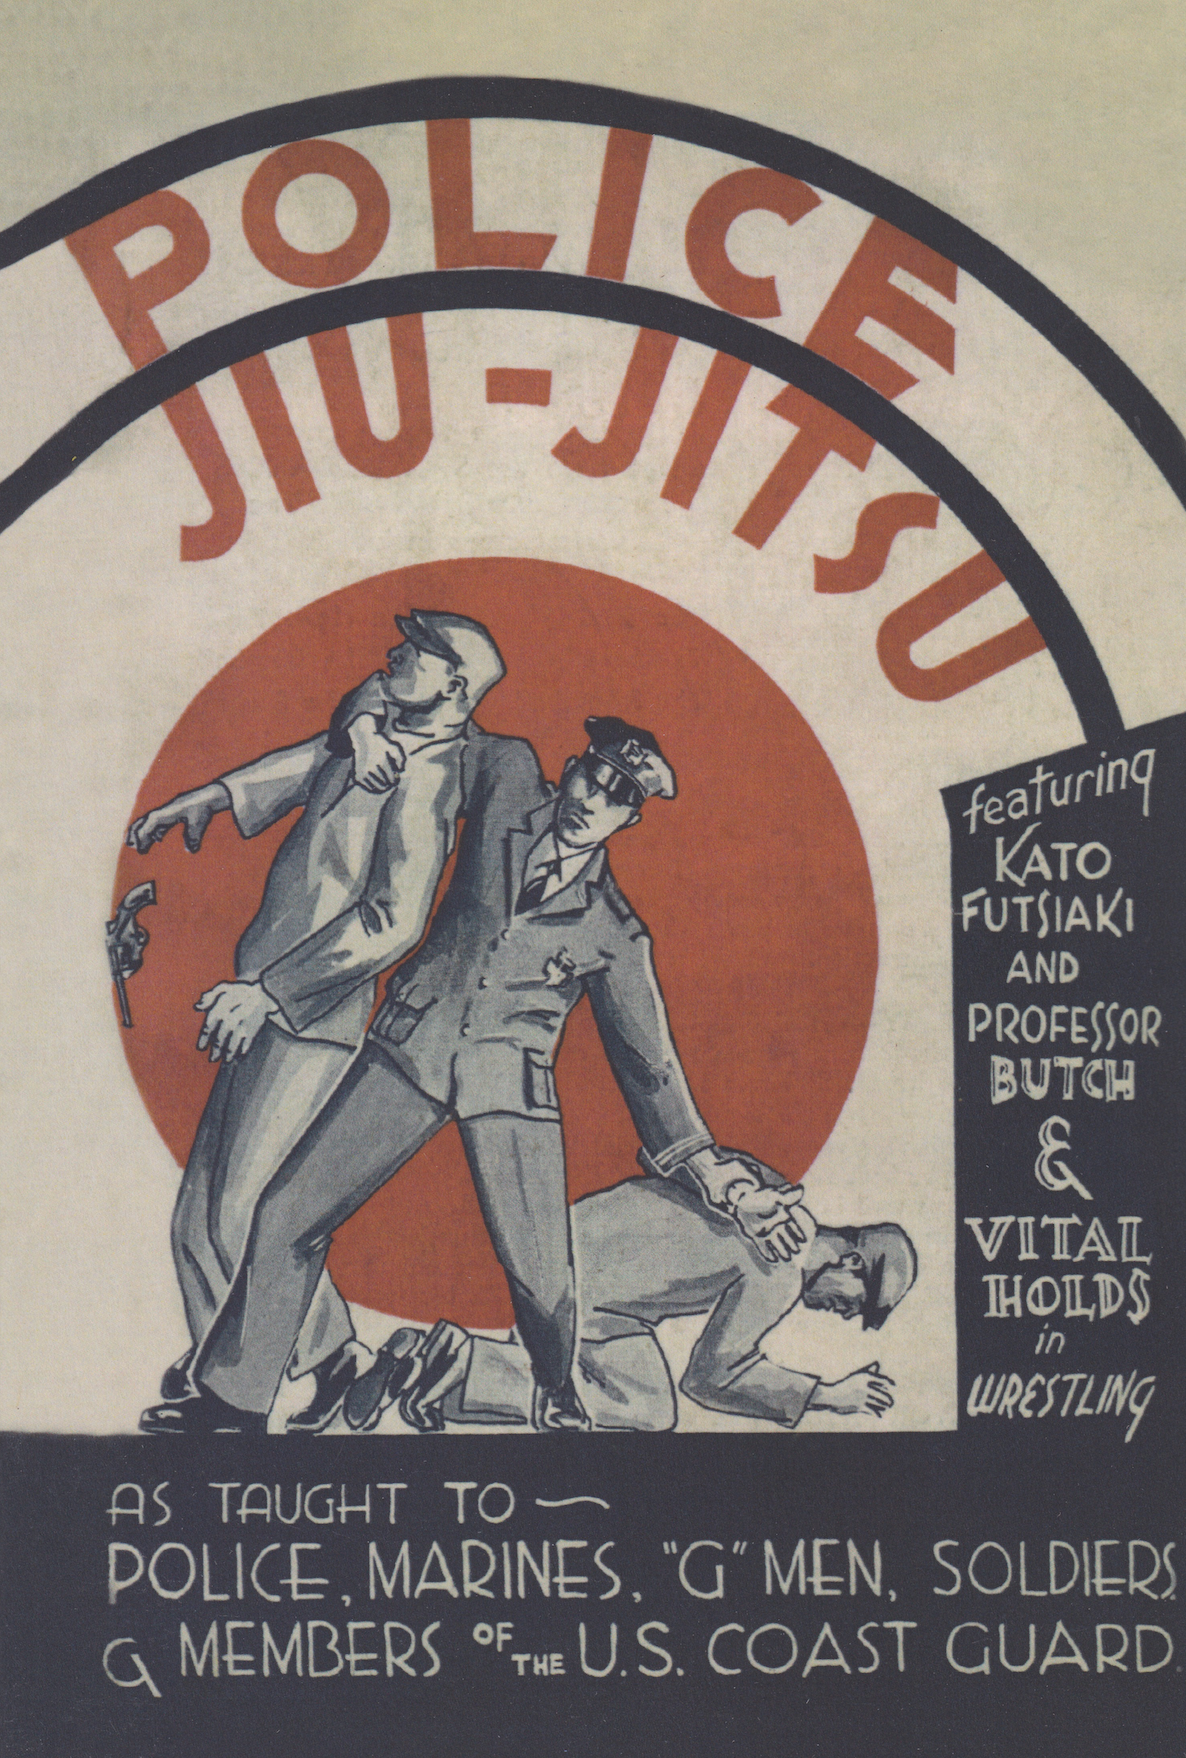 Libro Jiu-Jitsu policial: como se enseña a policías, marines y soldados (reimpresión)